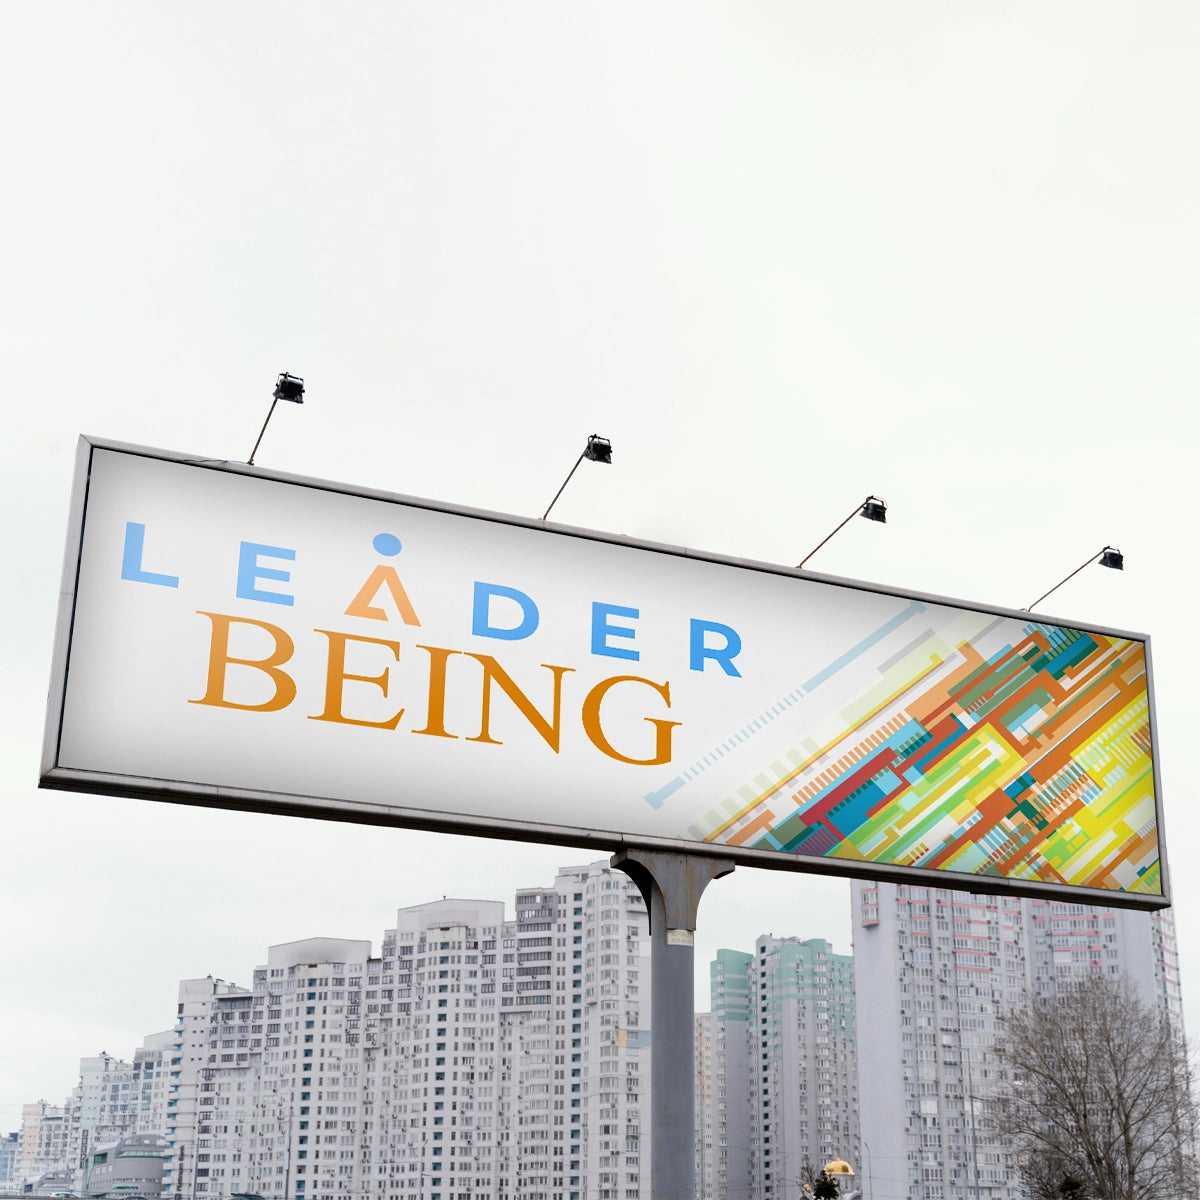 leaderbeing.com